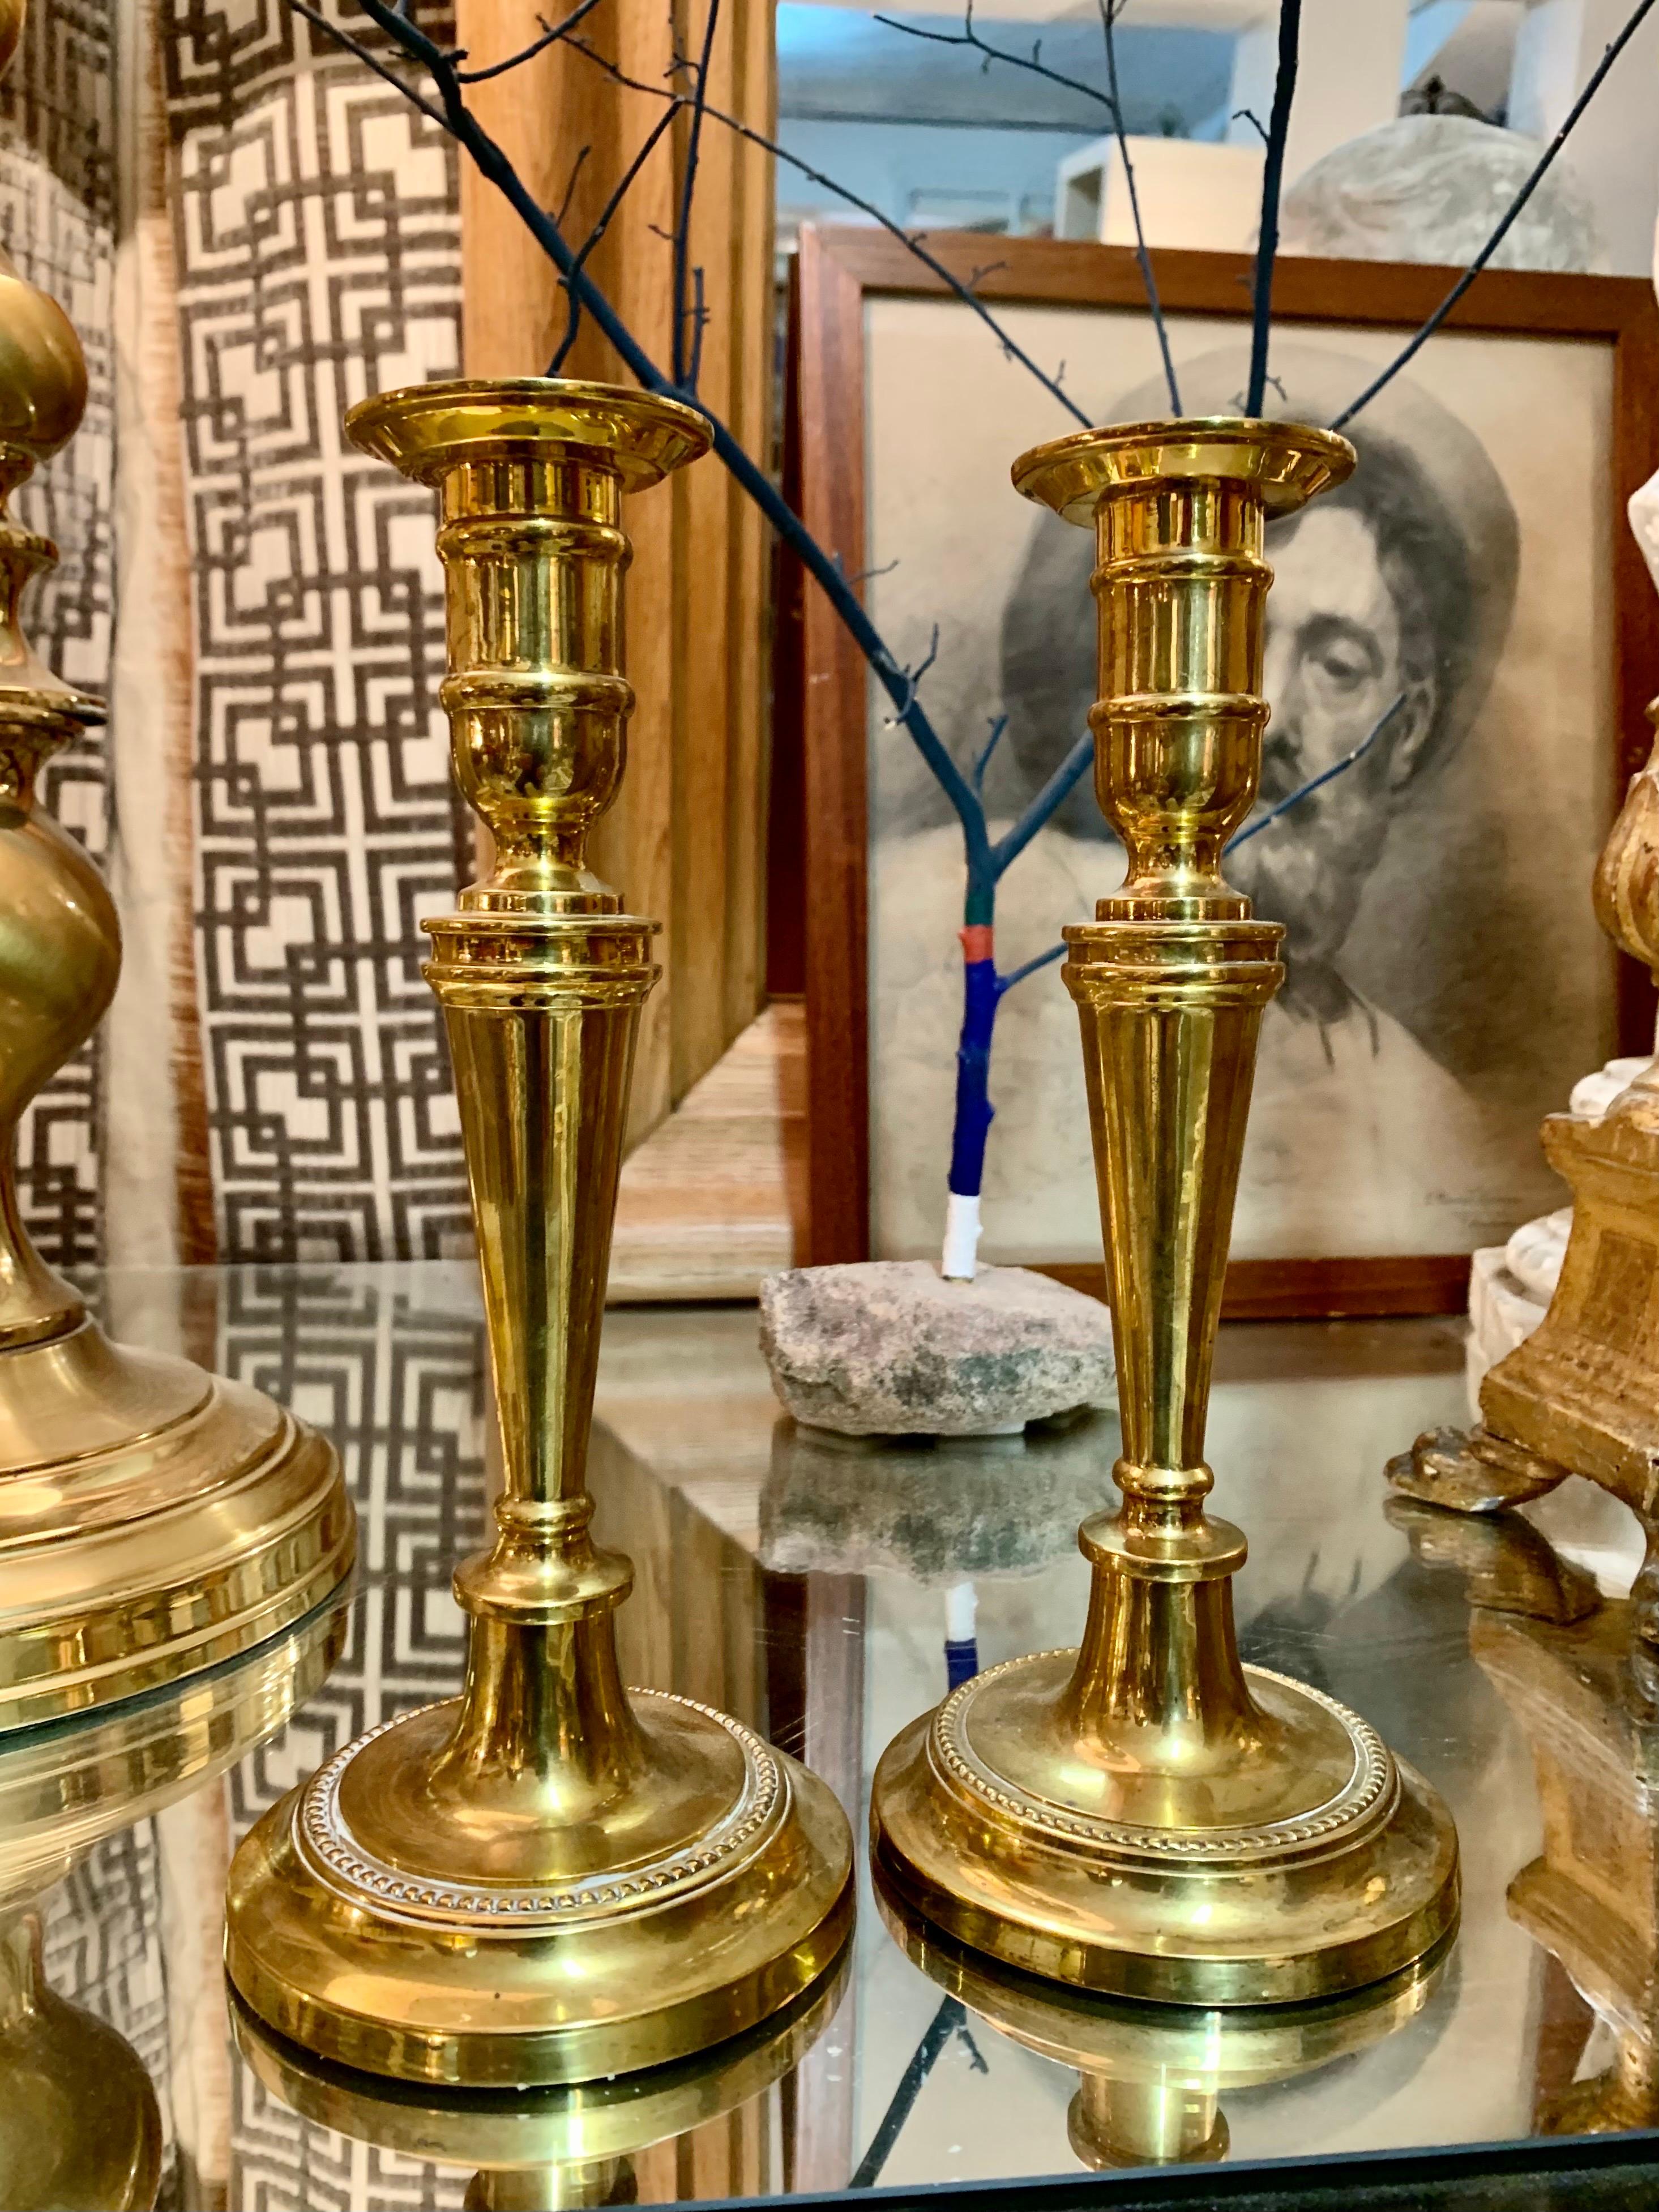 Paire de chandeliers en bronze de style Louis XVVI français du XIXe siècle.